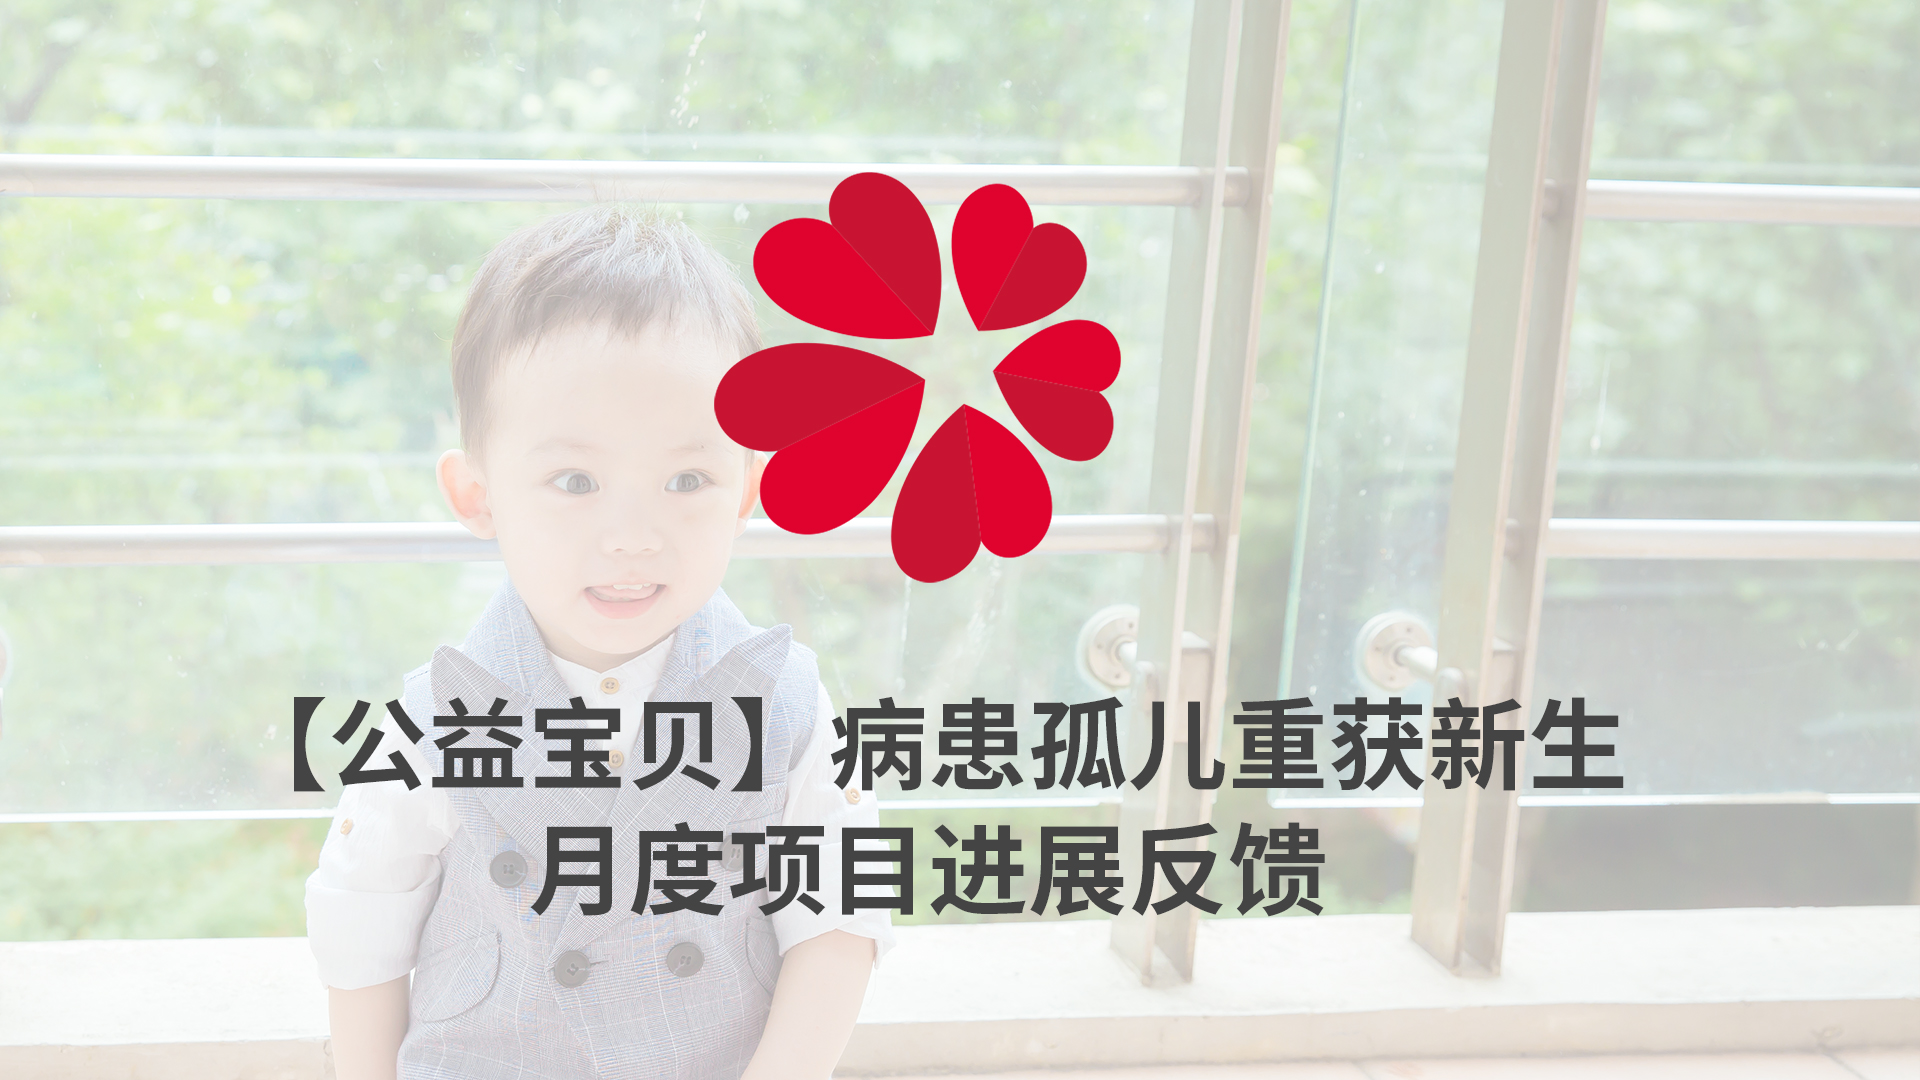 【XIN 益佰项目】病患孤儿重获新生 2023 年 2 月项目进展反馈